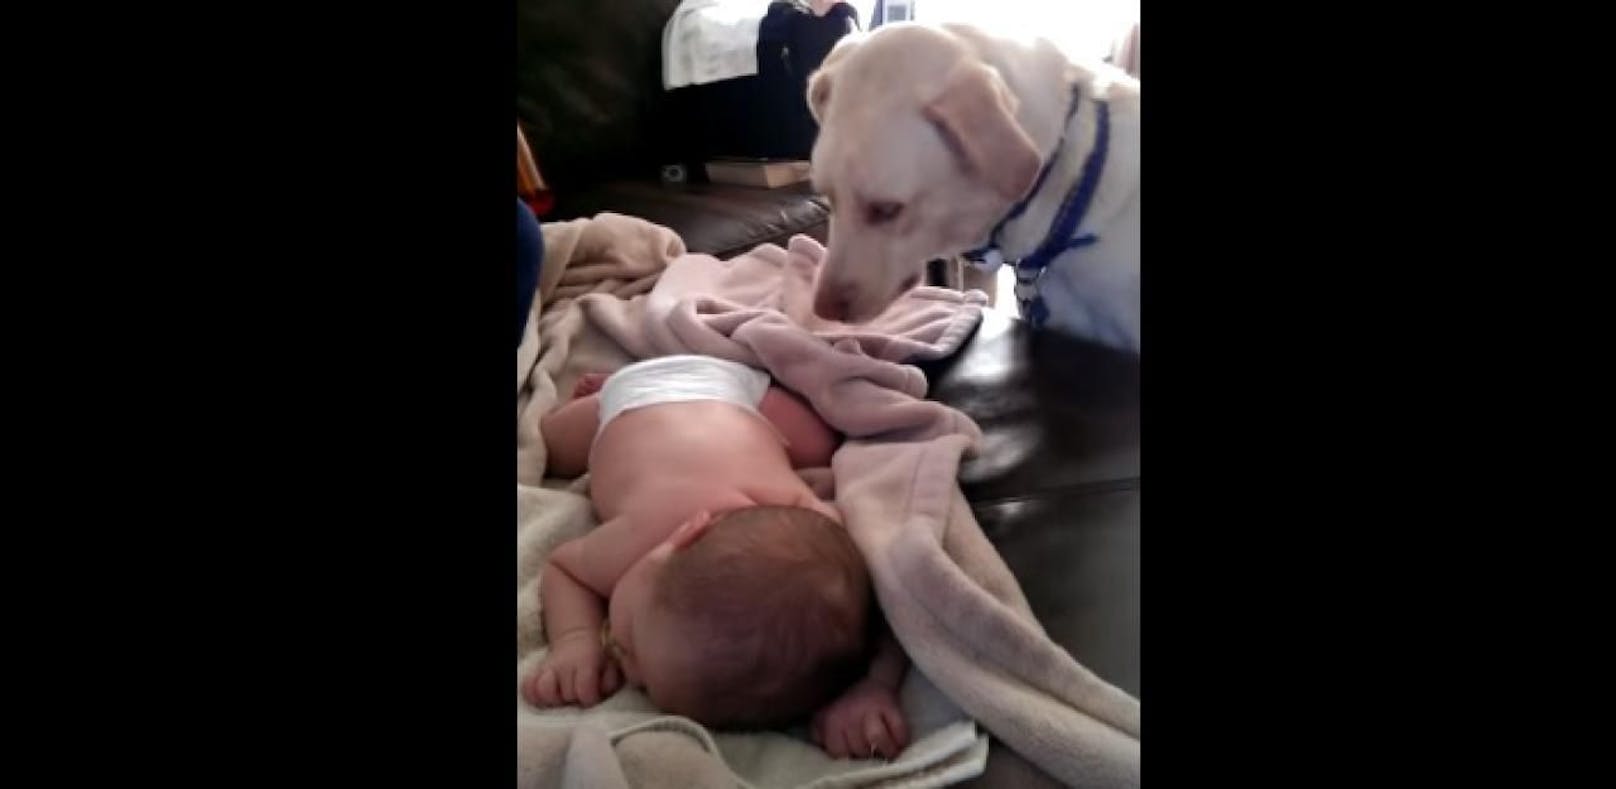 Fürsorglicher Hund deckt schlafendes Baby zu